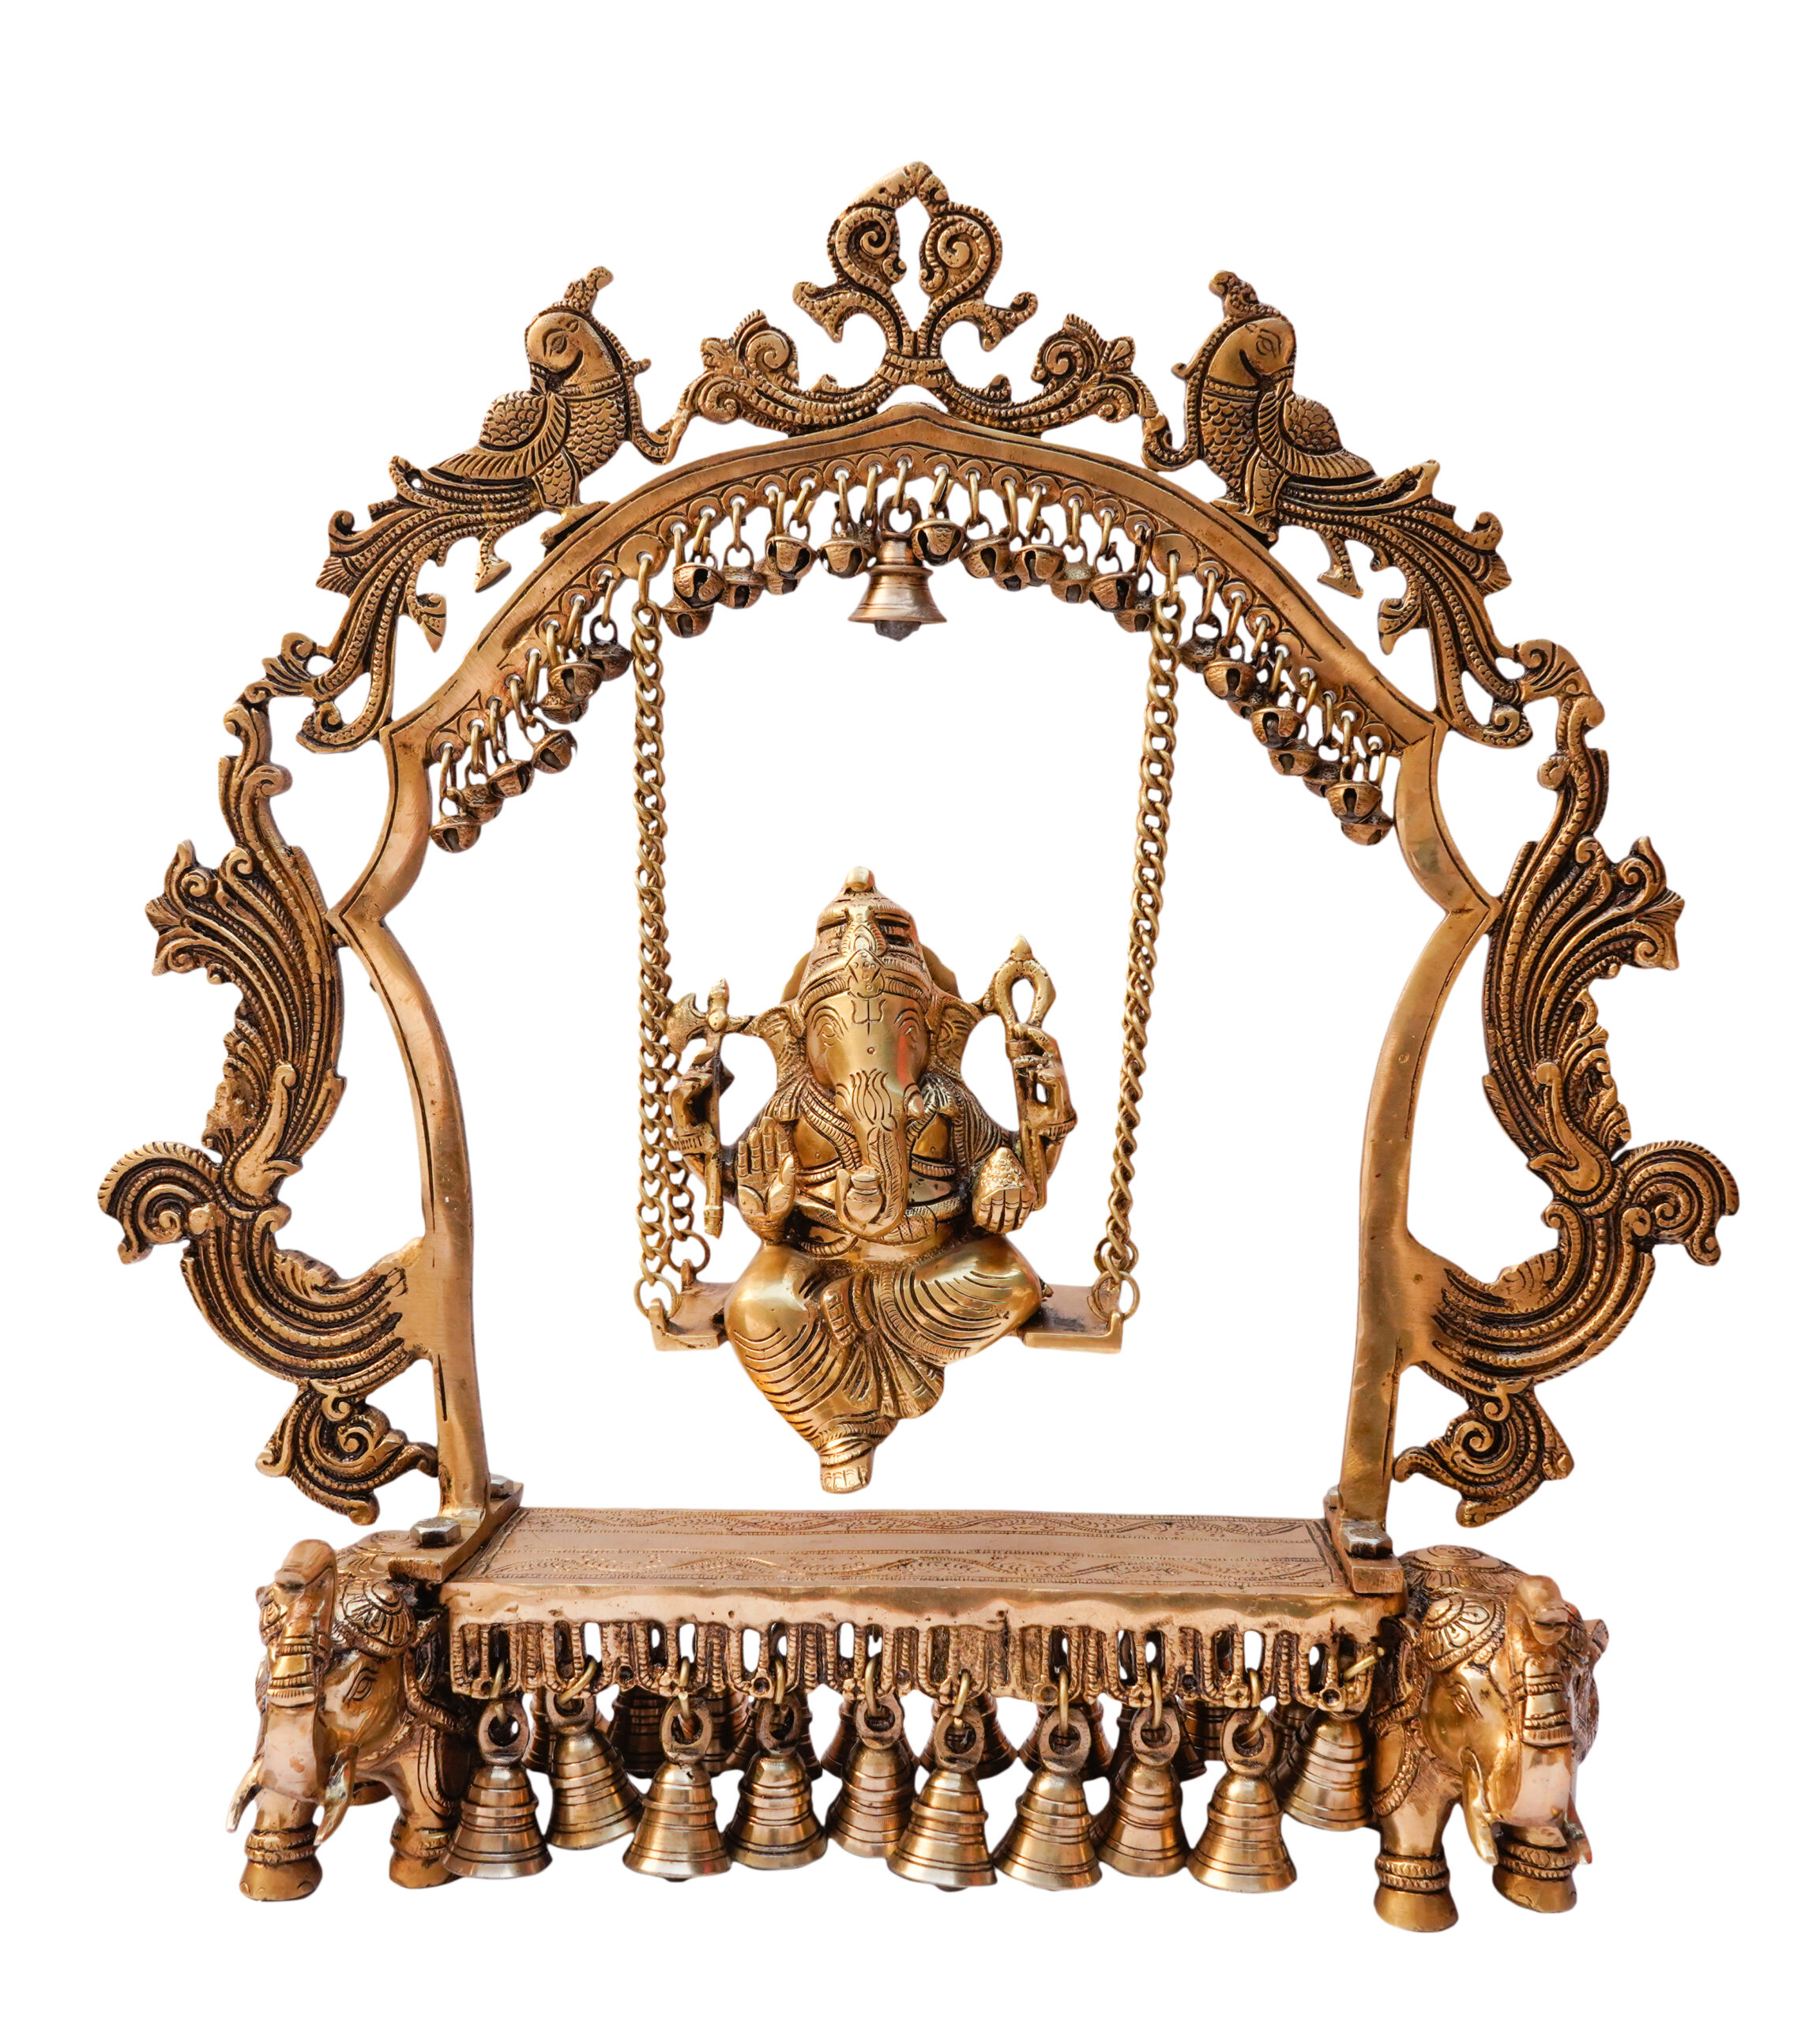 Brass Ganesha on Jhula Sitting Medium Size